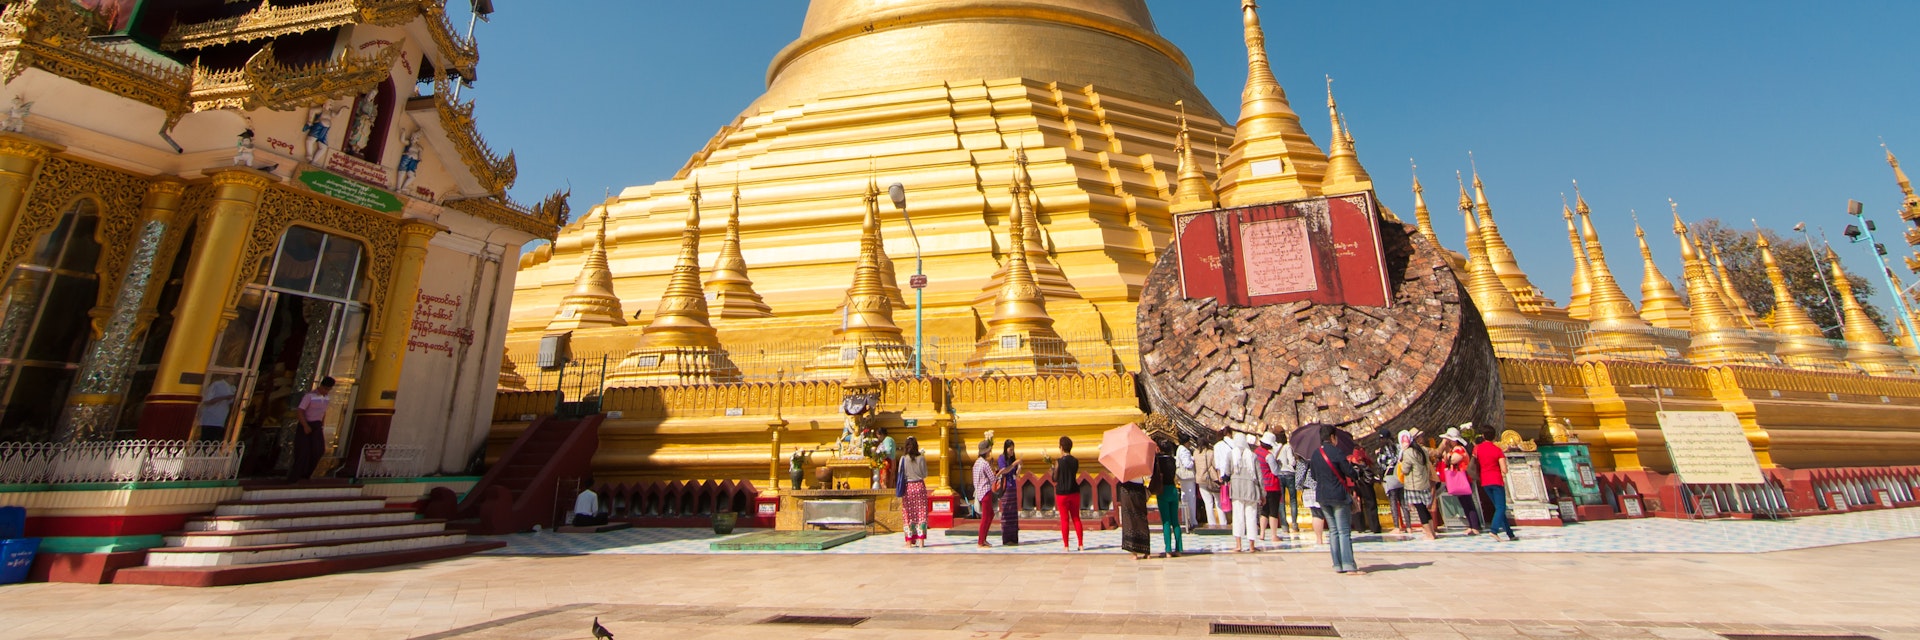 Shwemawdaw pagoda, Bago, Myanmar.